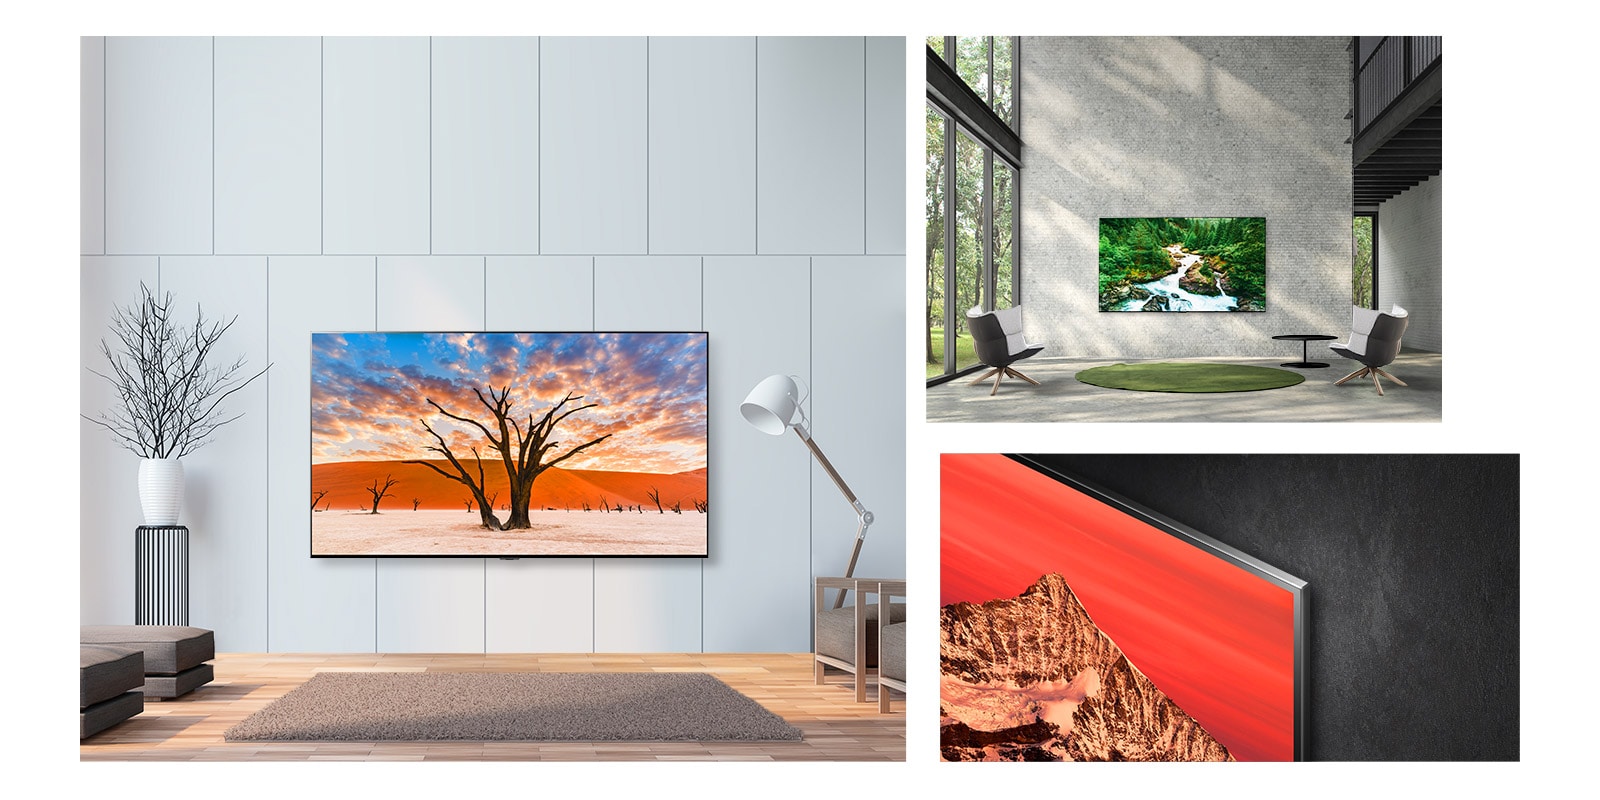 Trzy sceny smukłego i dużego telewizora LG QNED MiniLED zawieszonego na ścianie jak dzieło sztuki.